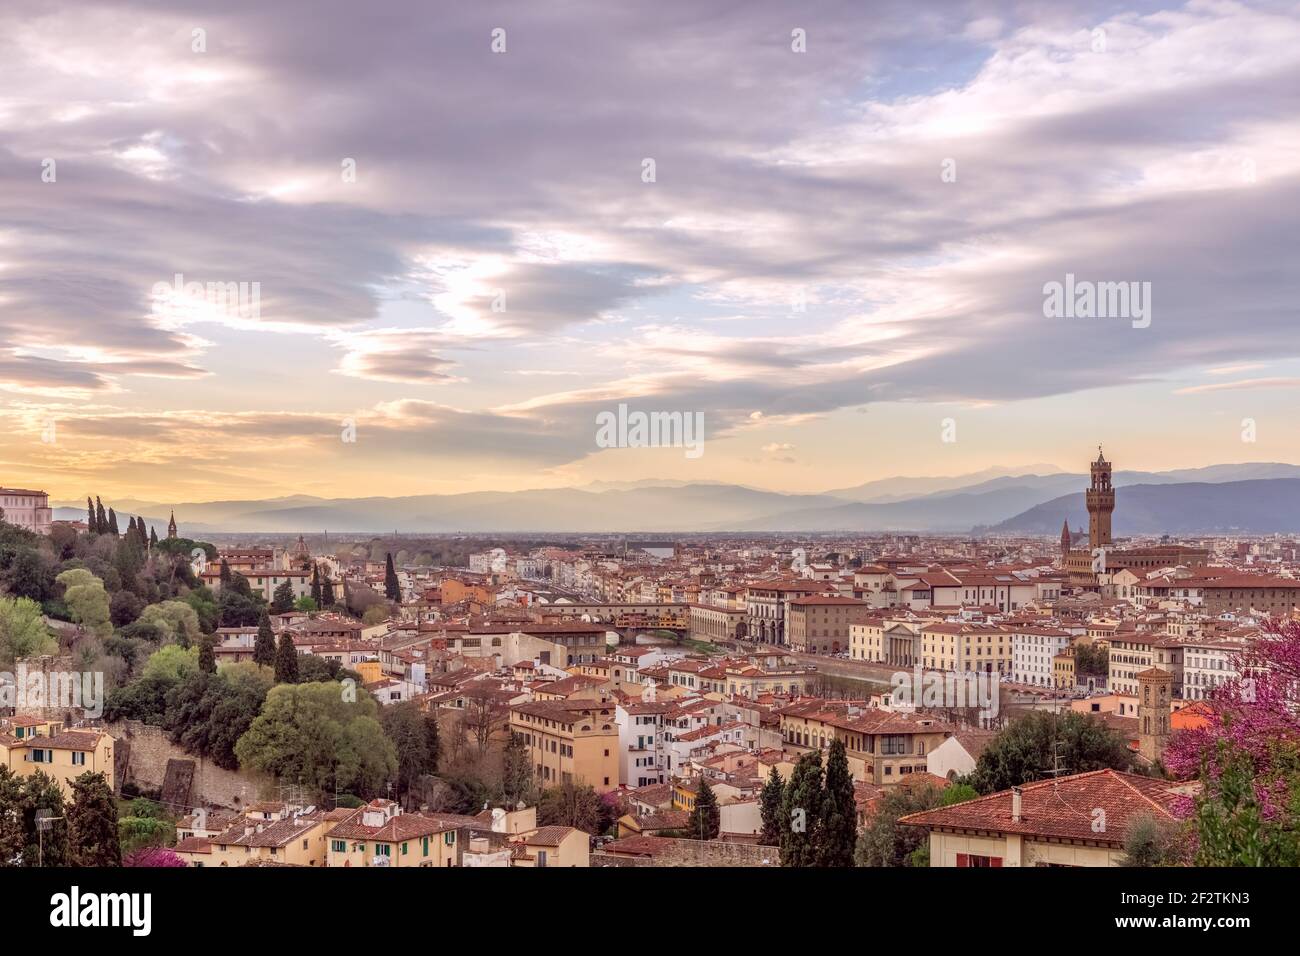 Vue panoramique sur le centre historique de Florence au coucher du soleil. Toscane, Italie Banque D'Images